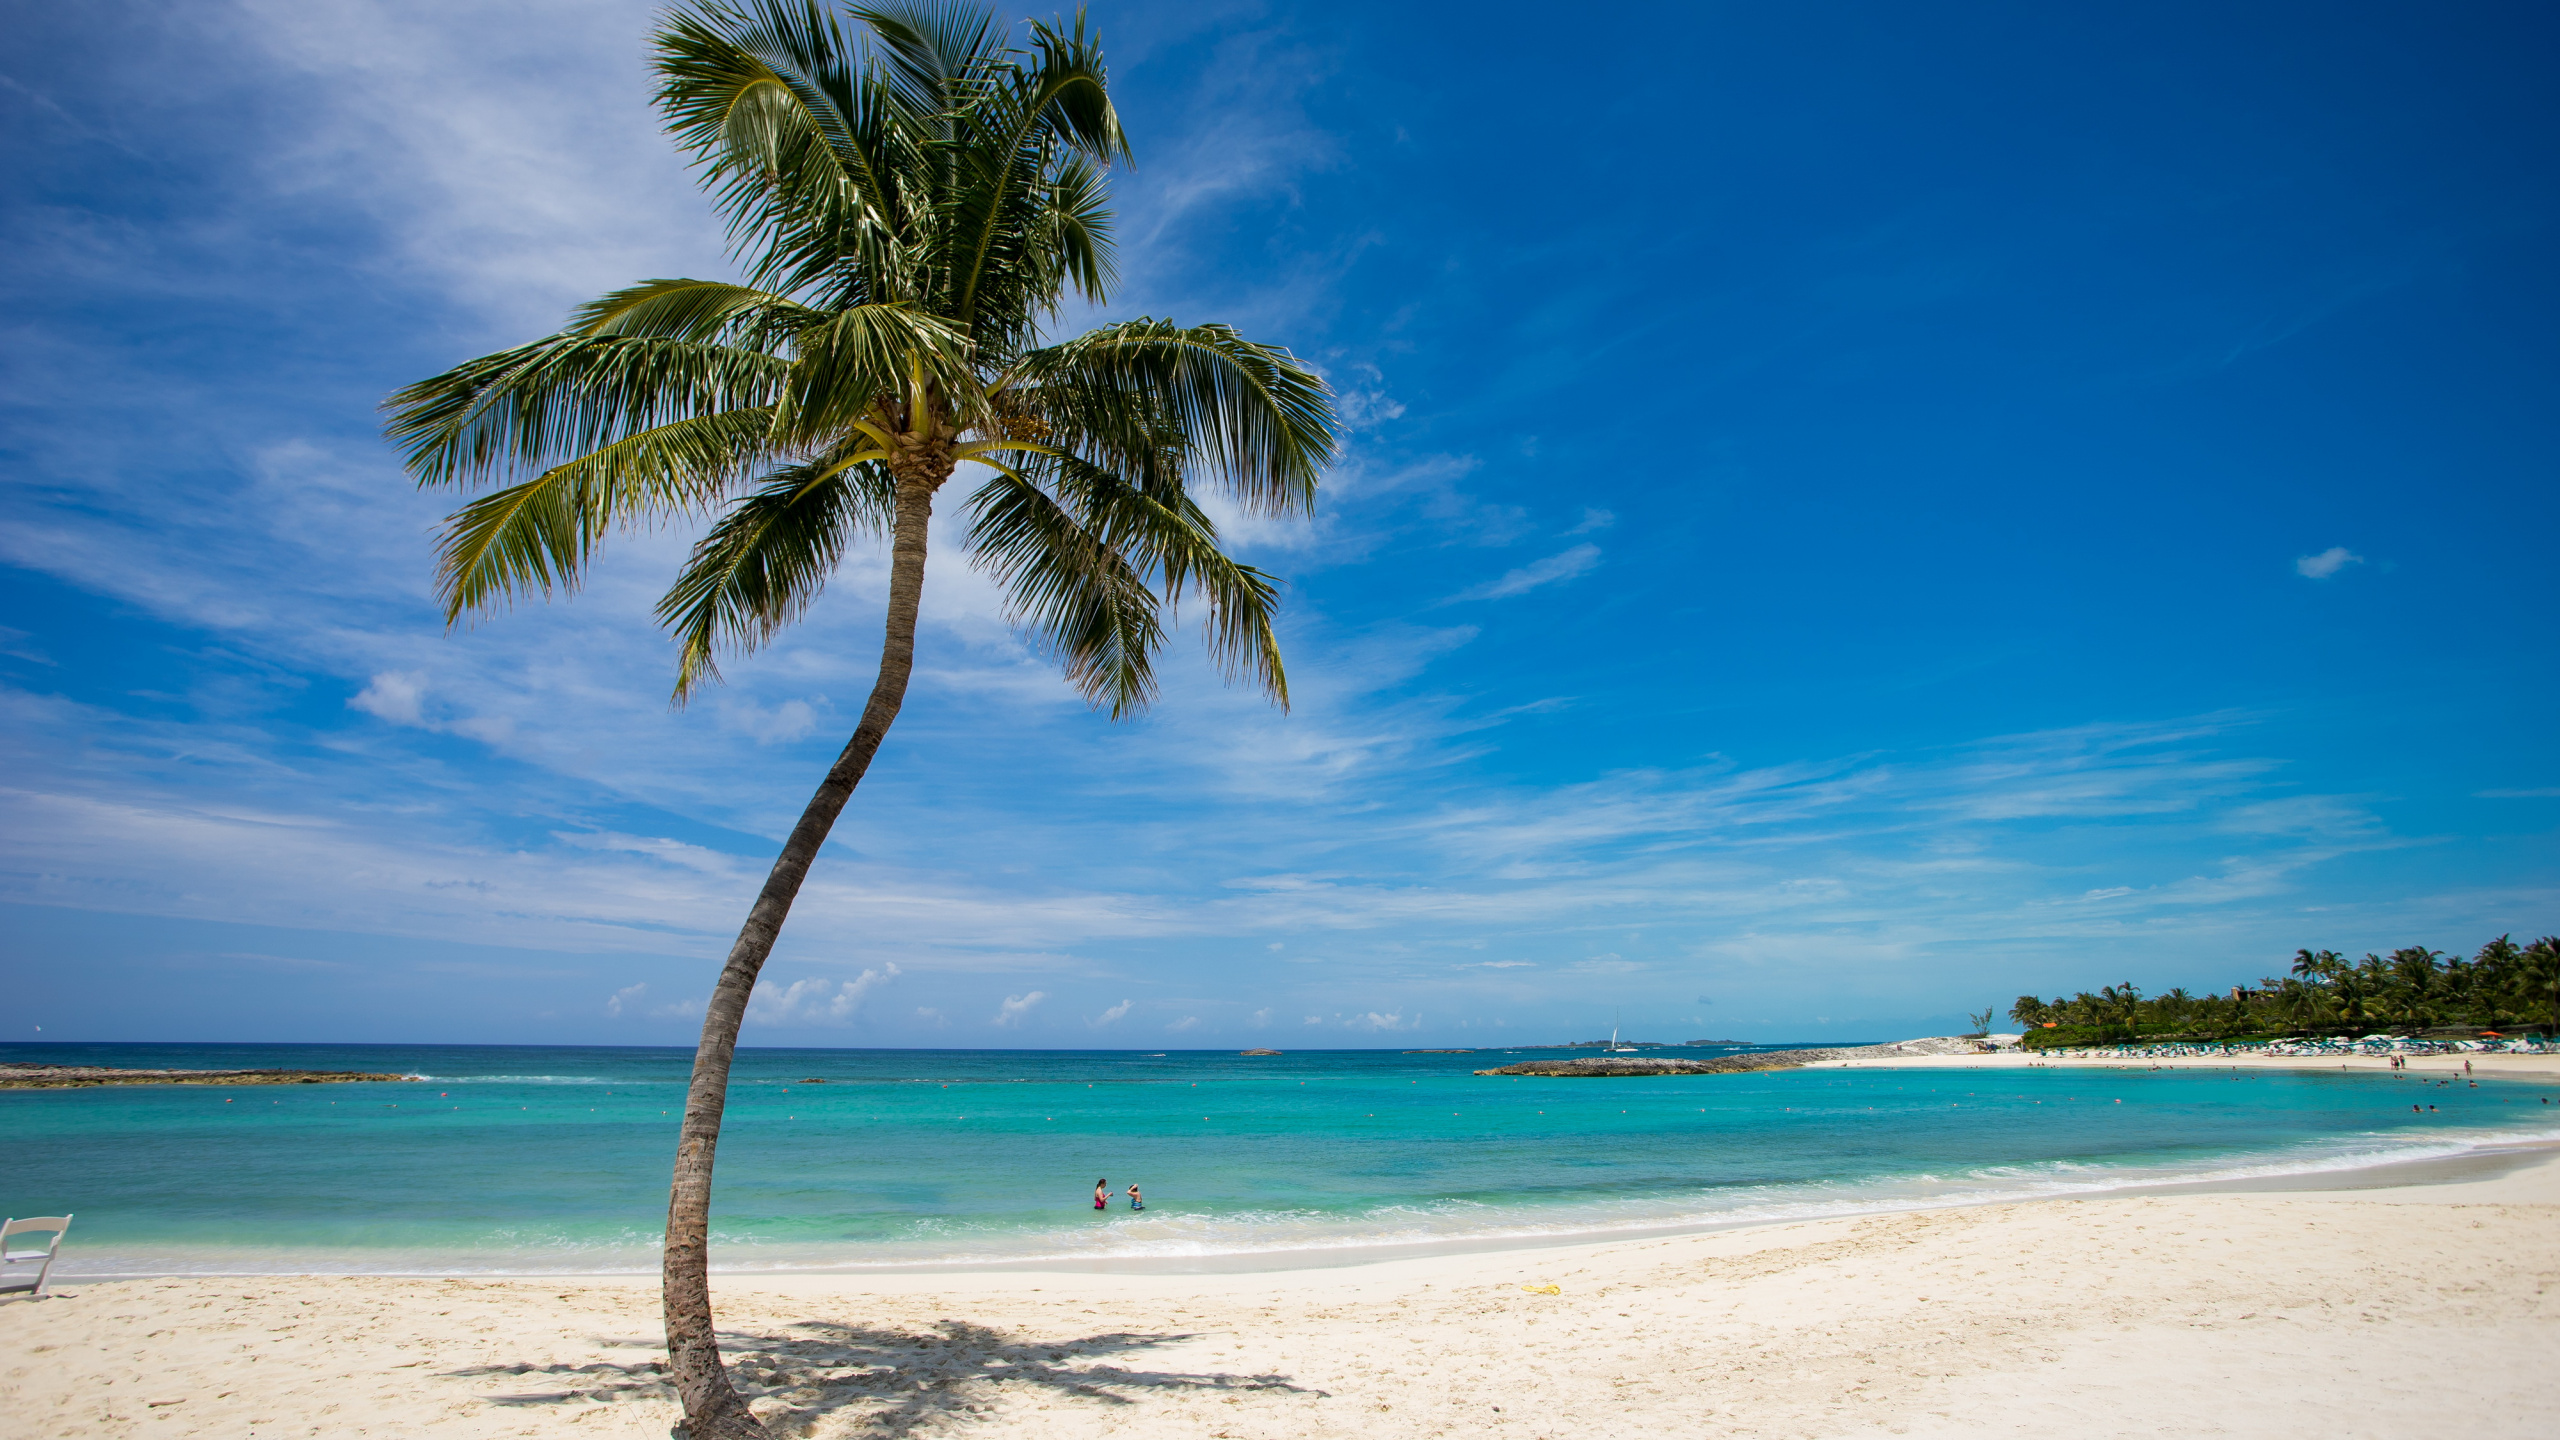 棕榈树, 大海, 热带地区, 加勒比, 岸边 壁纸 2560x1440 允许